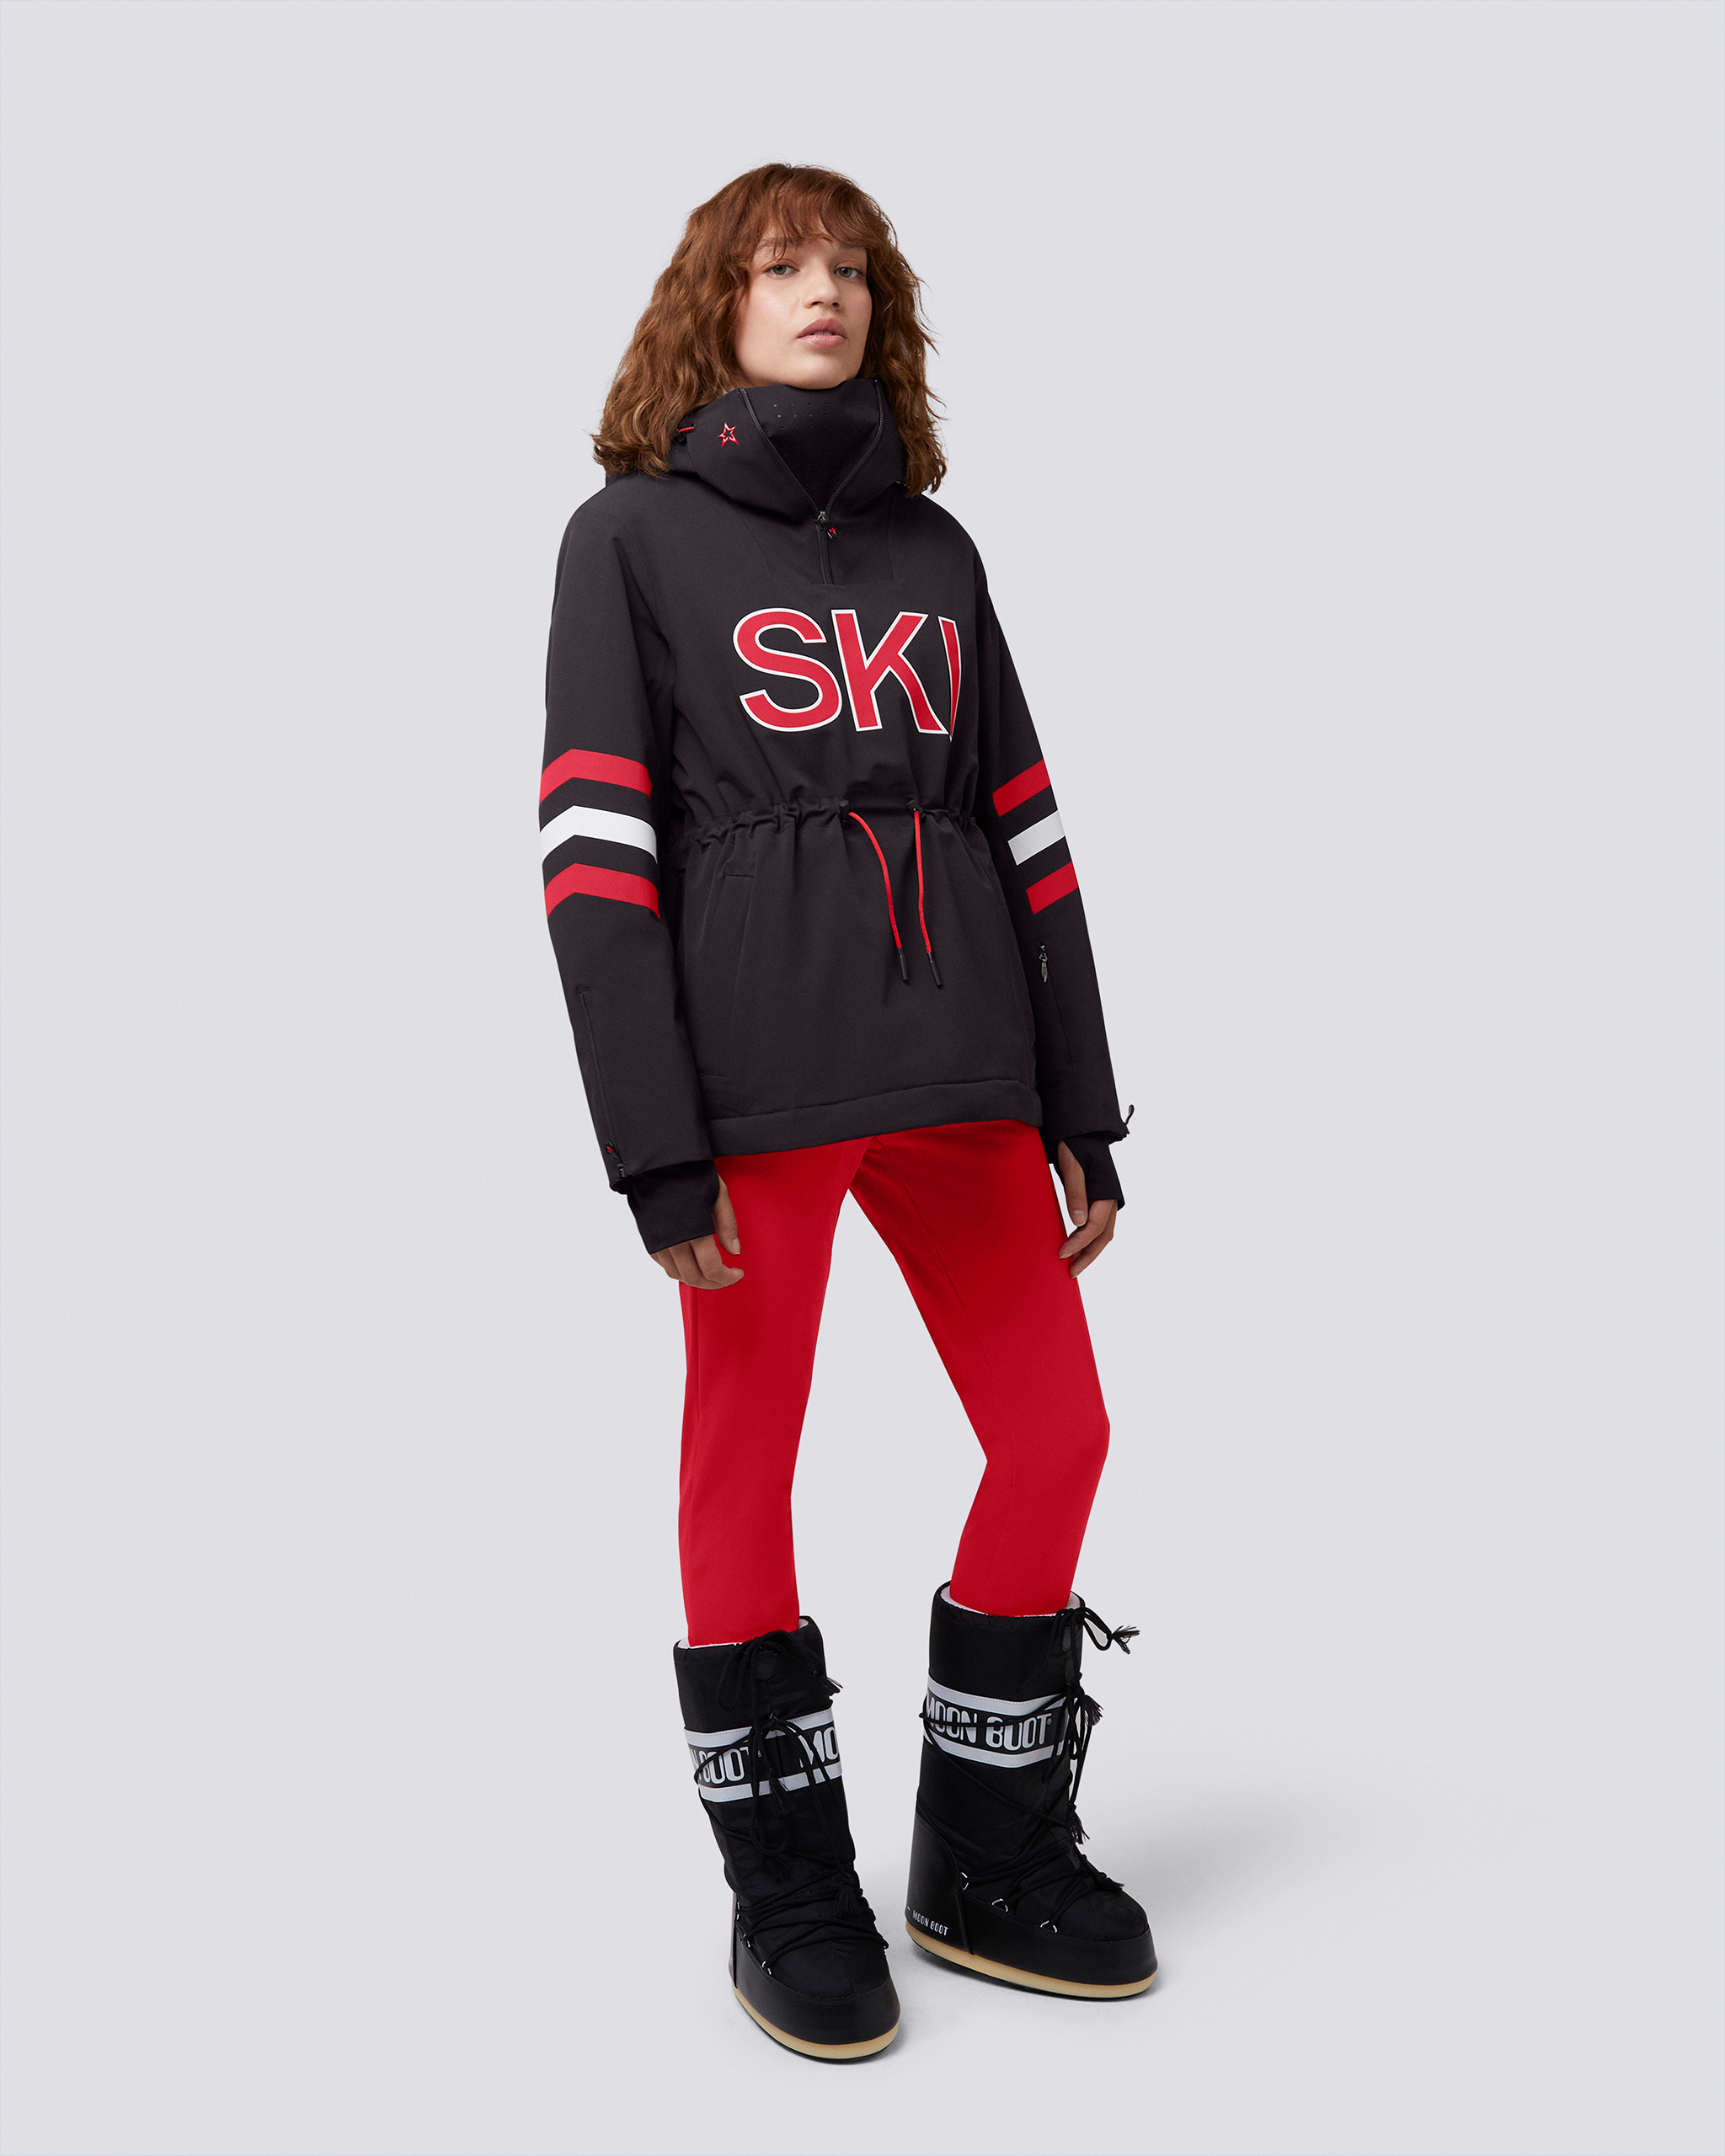 Perfect Moment Women Sport & Swimwear Skiwear Ski Suits Pullover Waterproof Ski Shirt L 